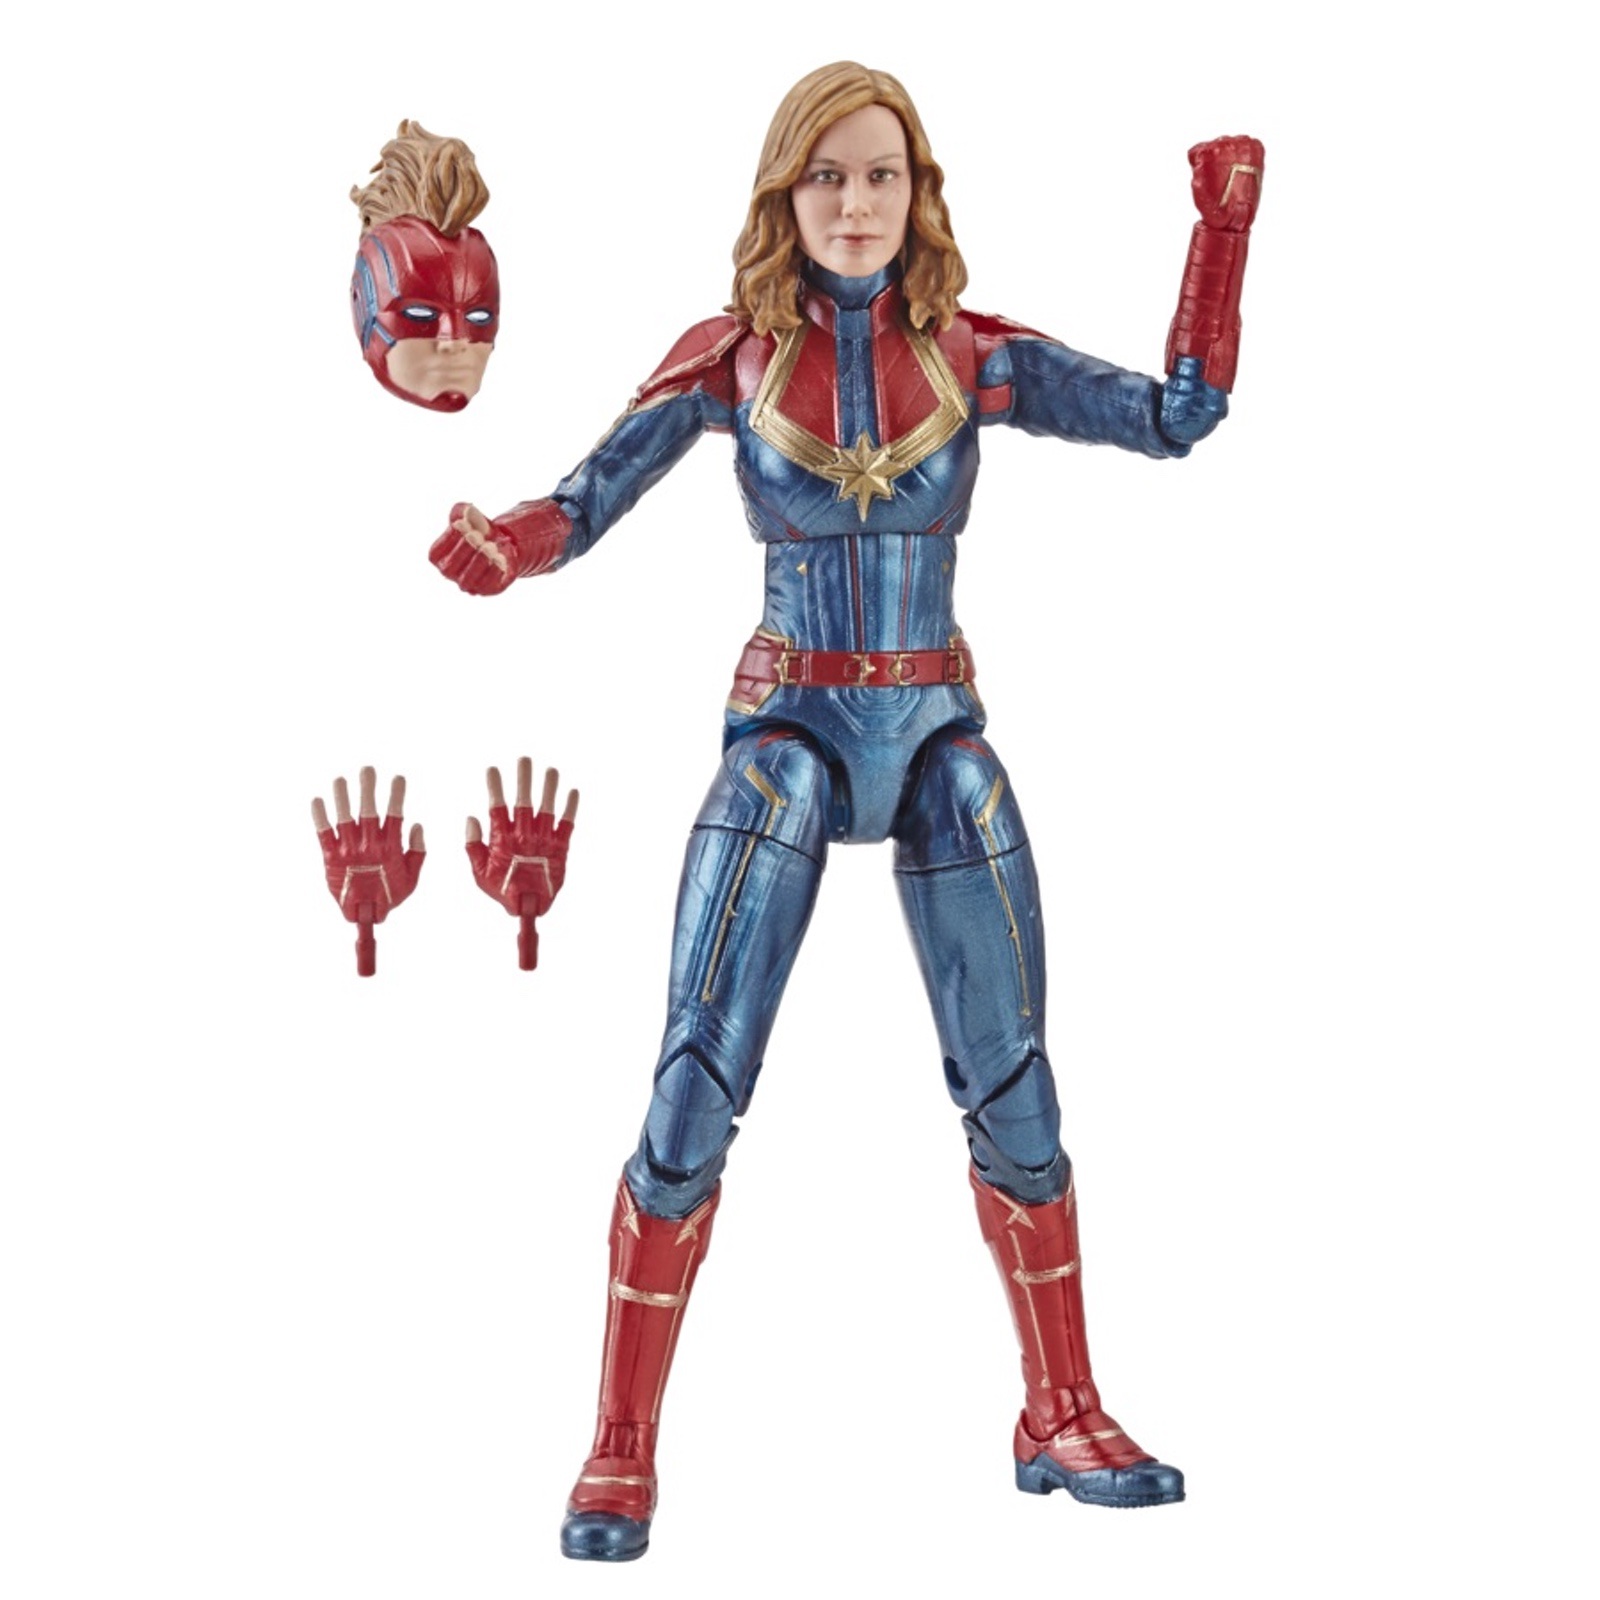 Hasbro Announces Captain Marvel Toys The Nerdy